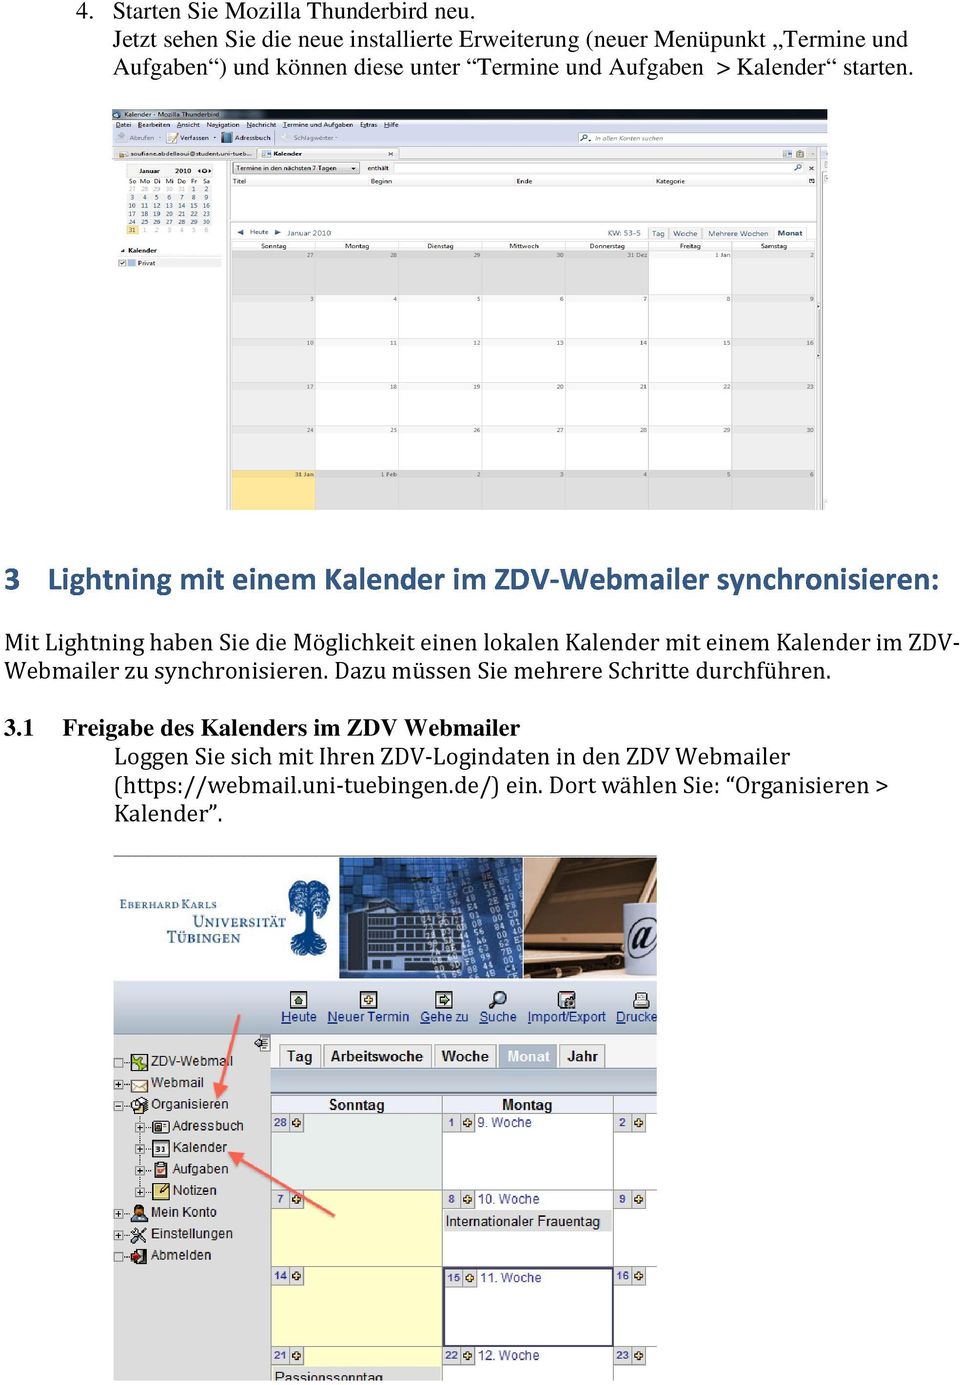 Kalender starten. Mit Lightning haben Sie die Möglichkeit einen lokalen Kalender mit einem Kalender im ZDV- Webmailer zu synchronisieren.